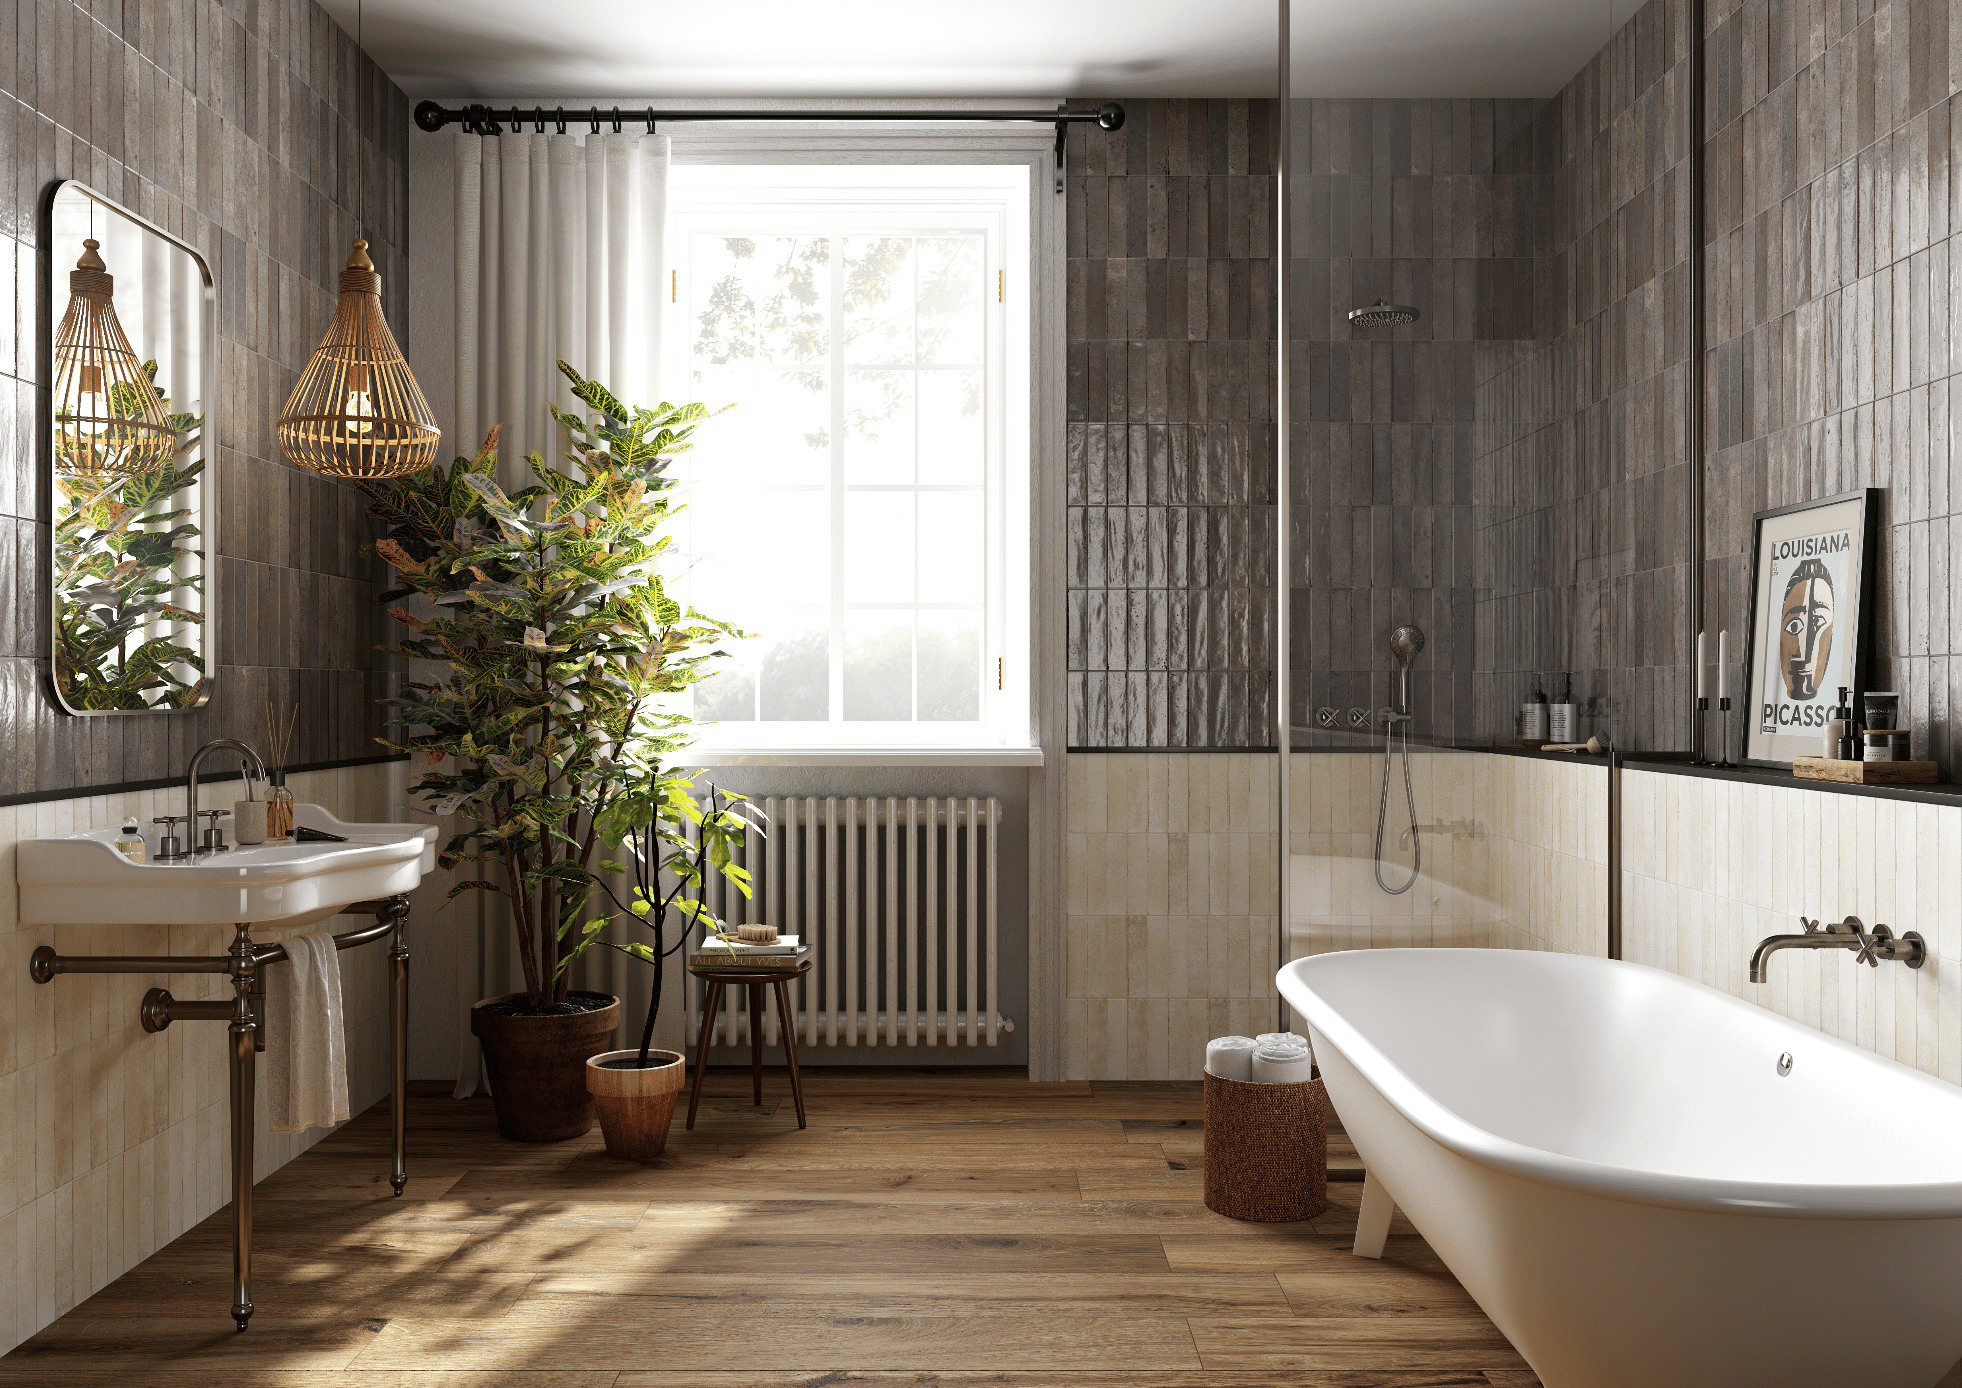 Fliesendorf zeigt ein Badezimmer mit Holzboden, einer weissen Badewanne, grauen und beigen Fliesen an der Wand, einer Glaswand bei der Dusche und einem großen Fenster.